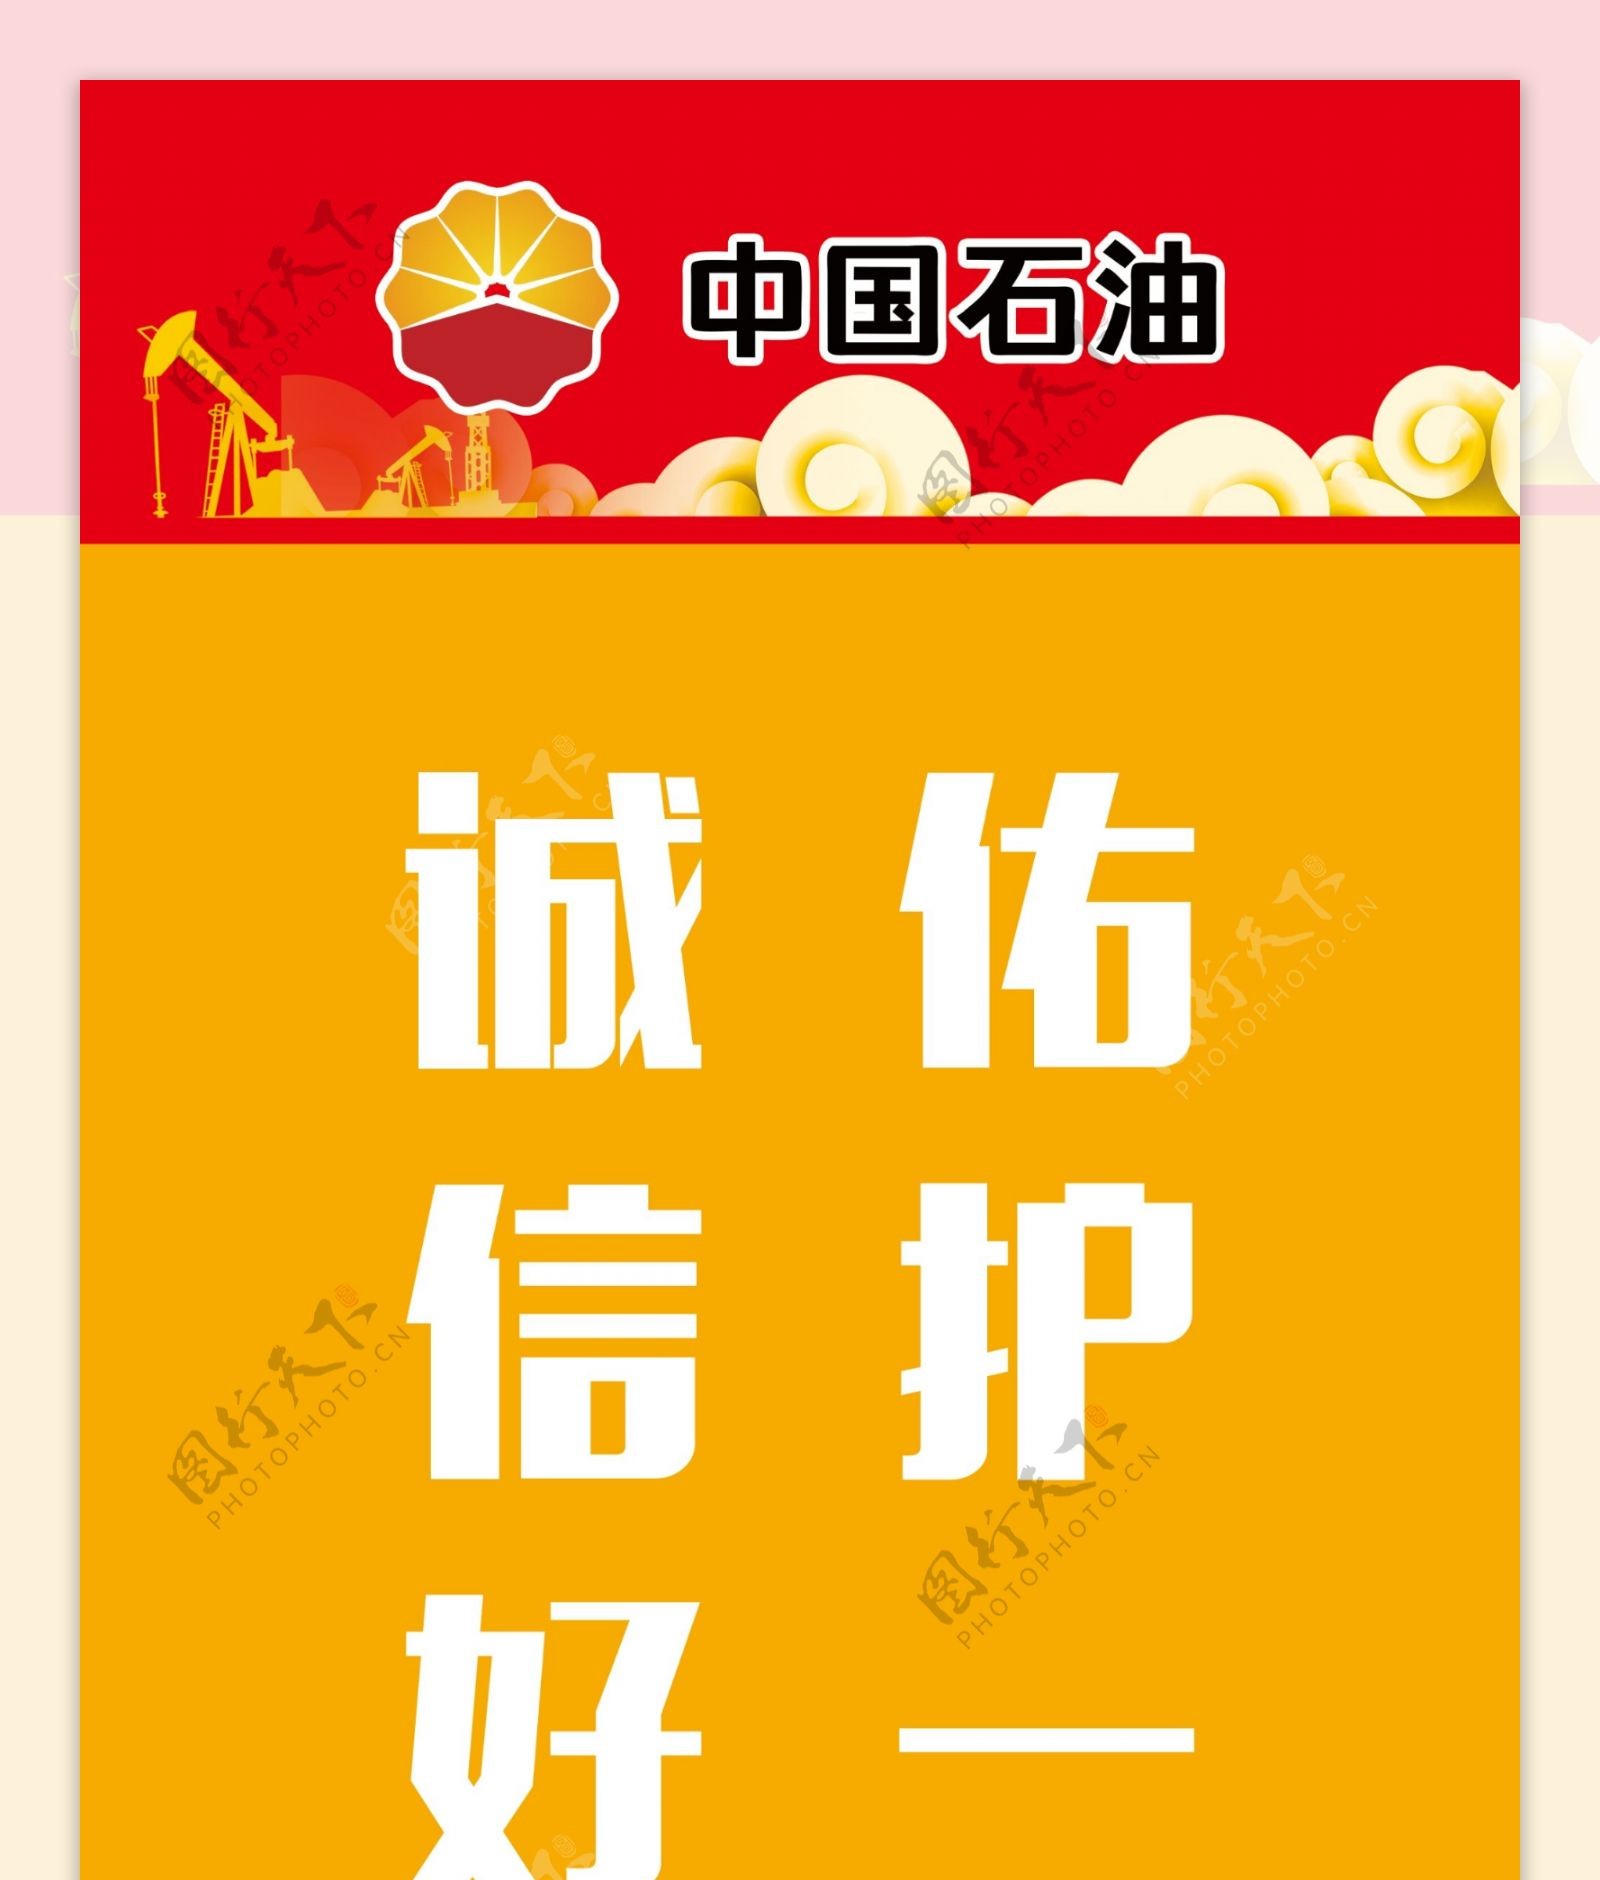 中国石油道旗